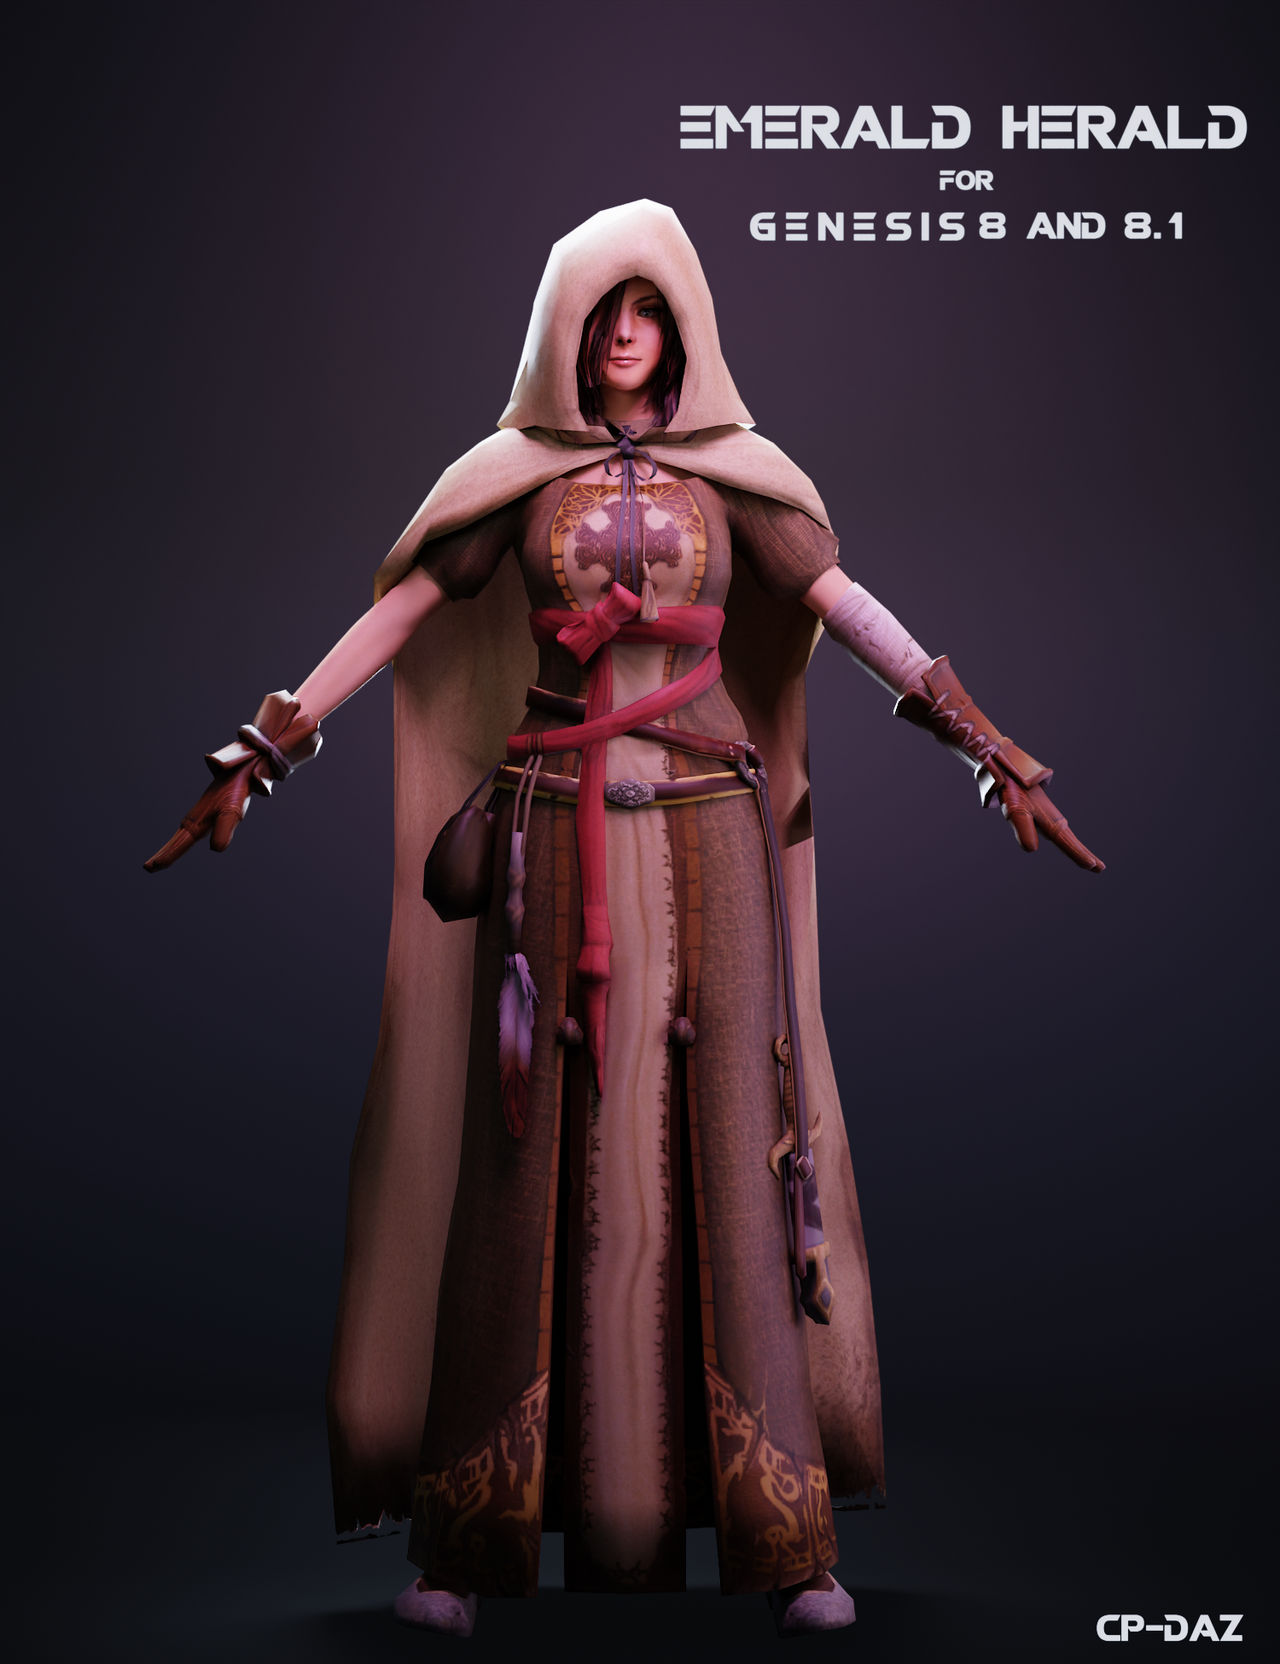 Sif God of War Ragnarok 3d model by HitmanHimself on DeviantArt